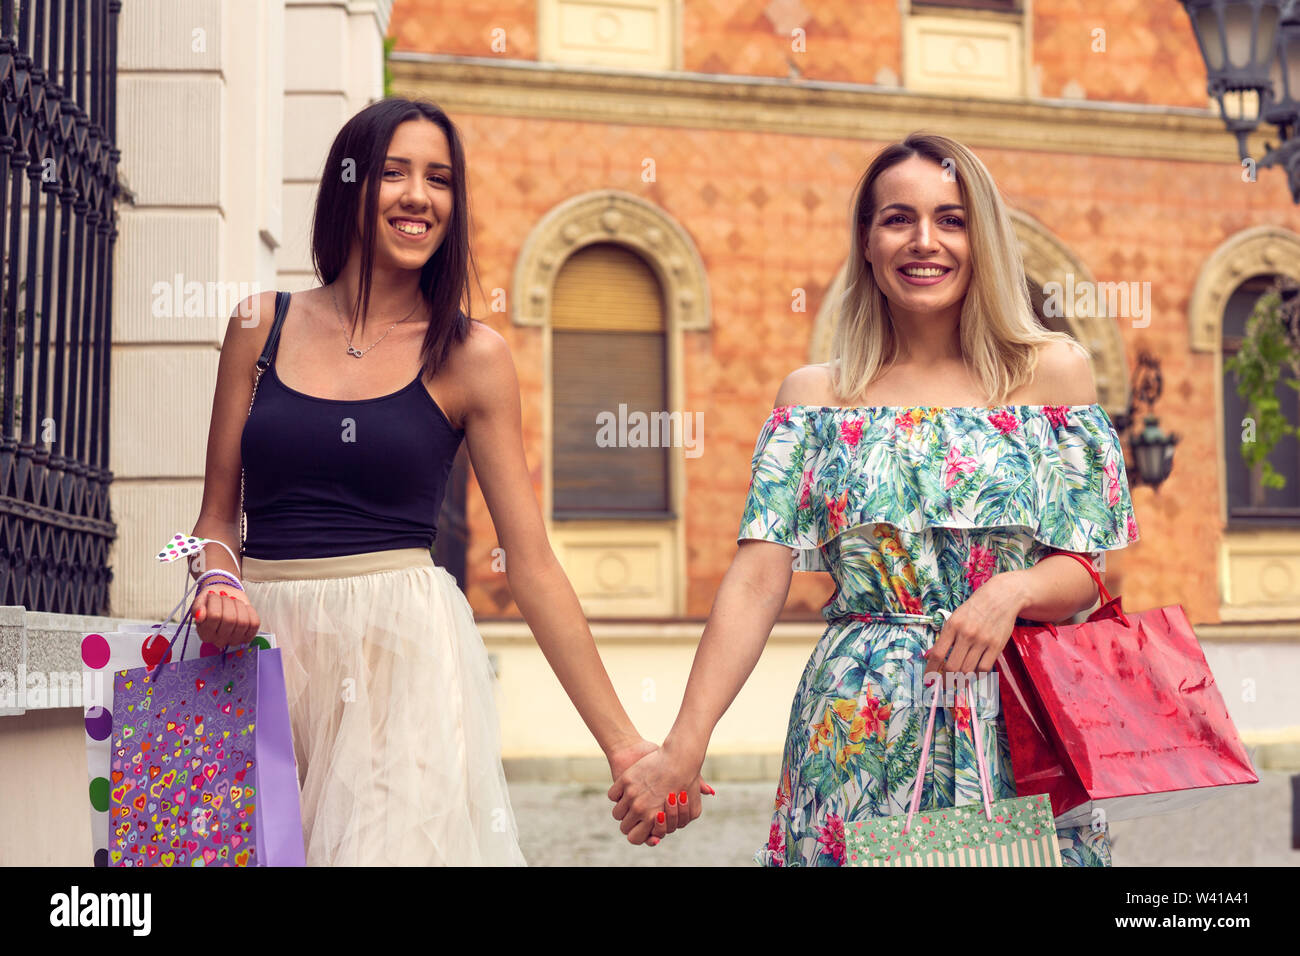 Le bonheur, des amis, de la vente et de l'amusant concept-smiling young women with shopping bags. Banque D'Images